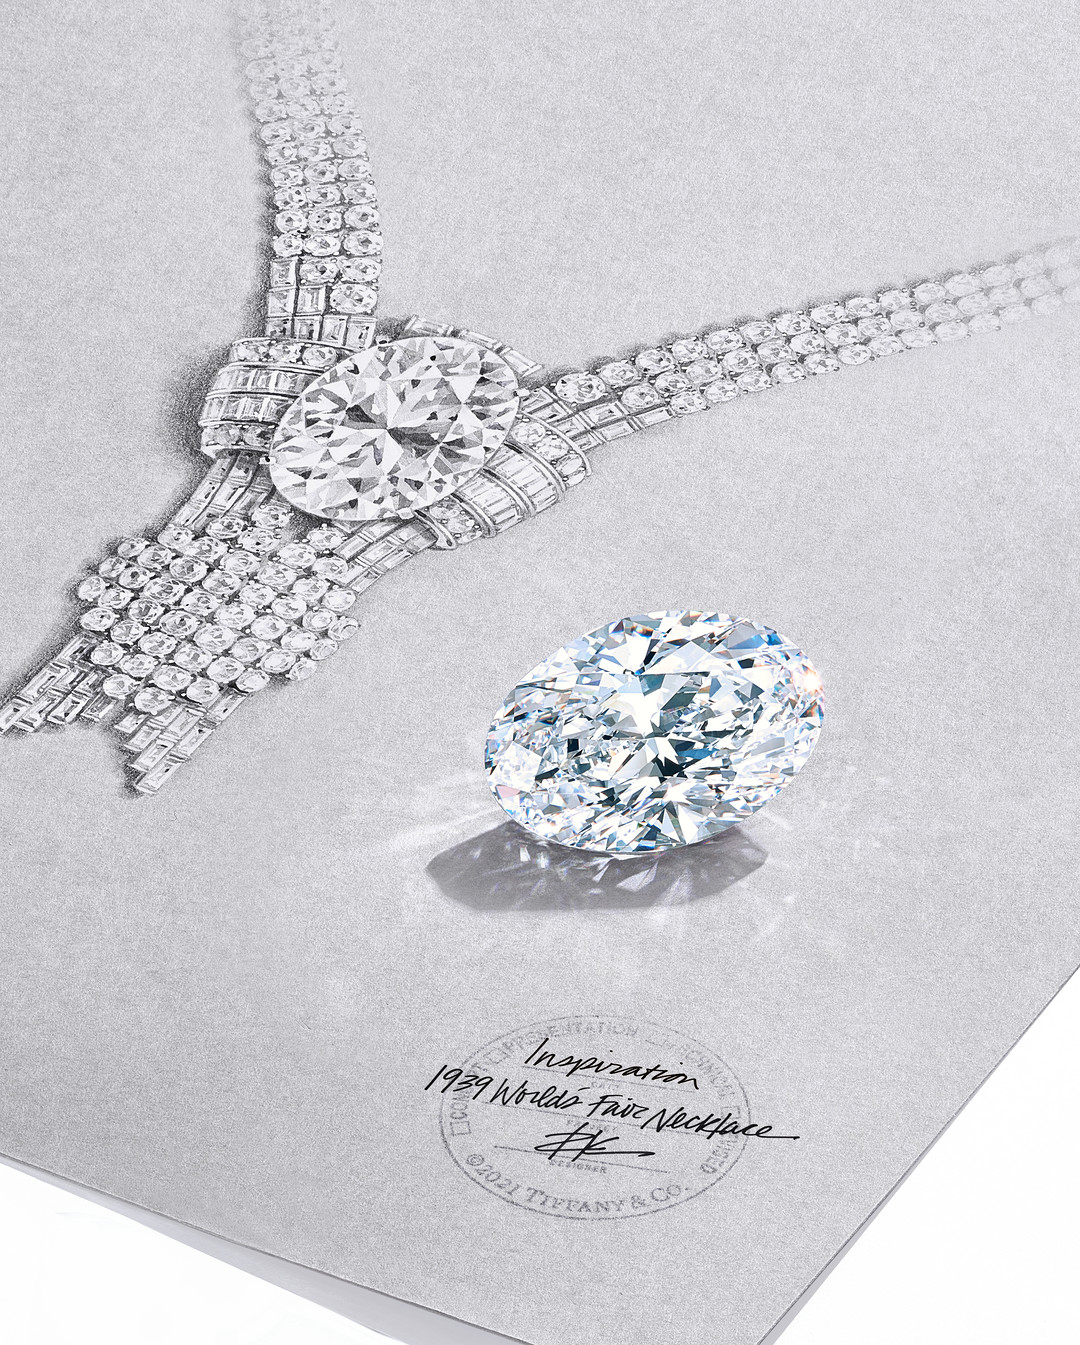 奢品鉴赏 蒂芙尼用80克拉美钻 重新演绎1939年的古董典藏之作 珠宝首饰 什么值得买